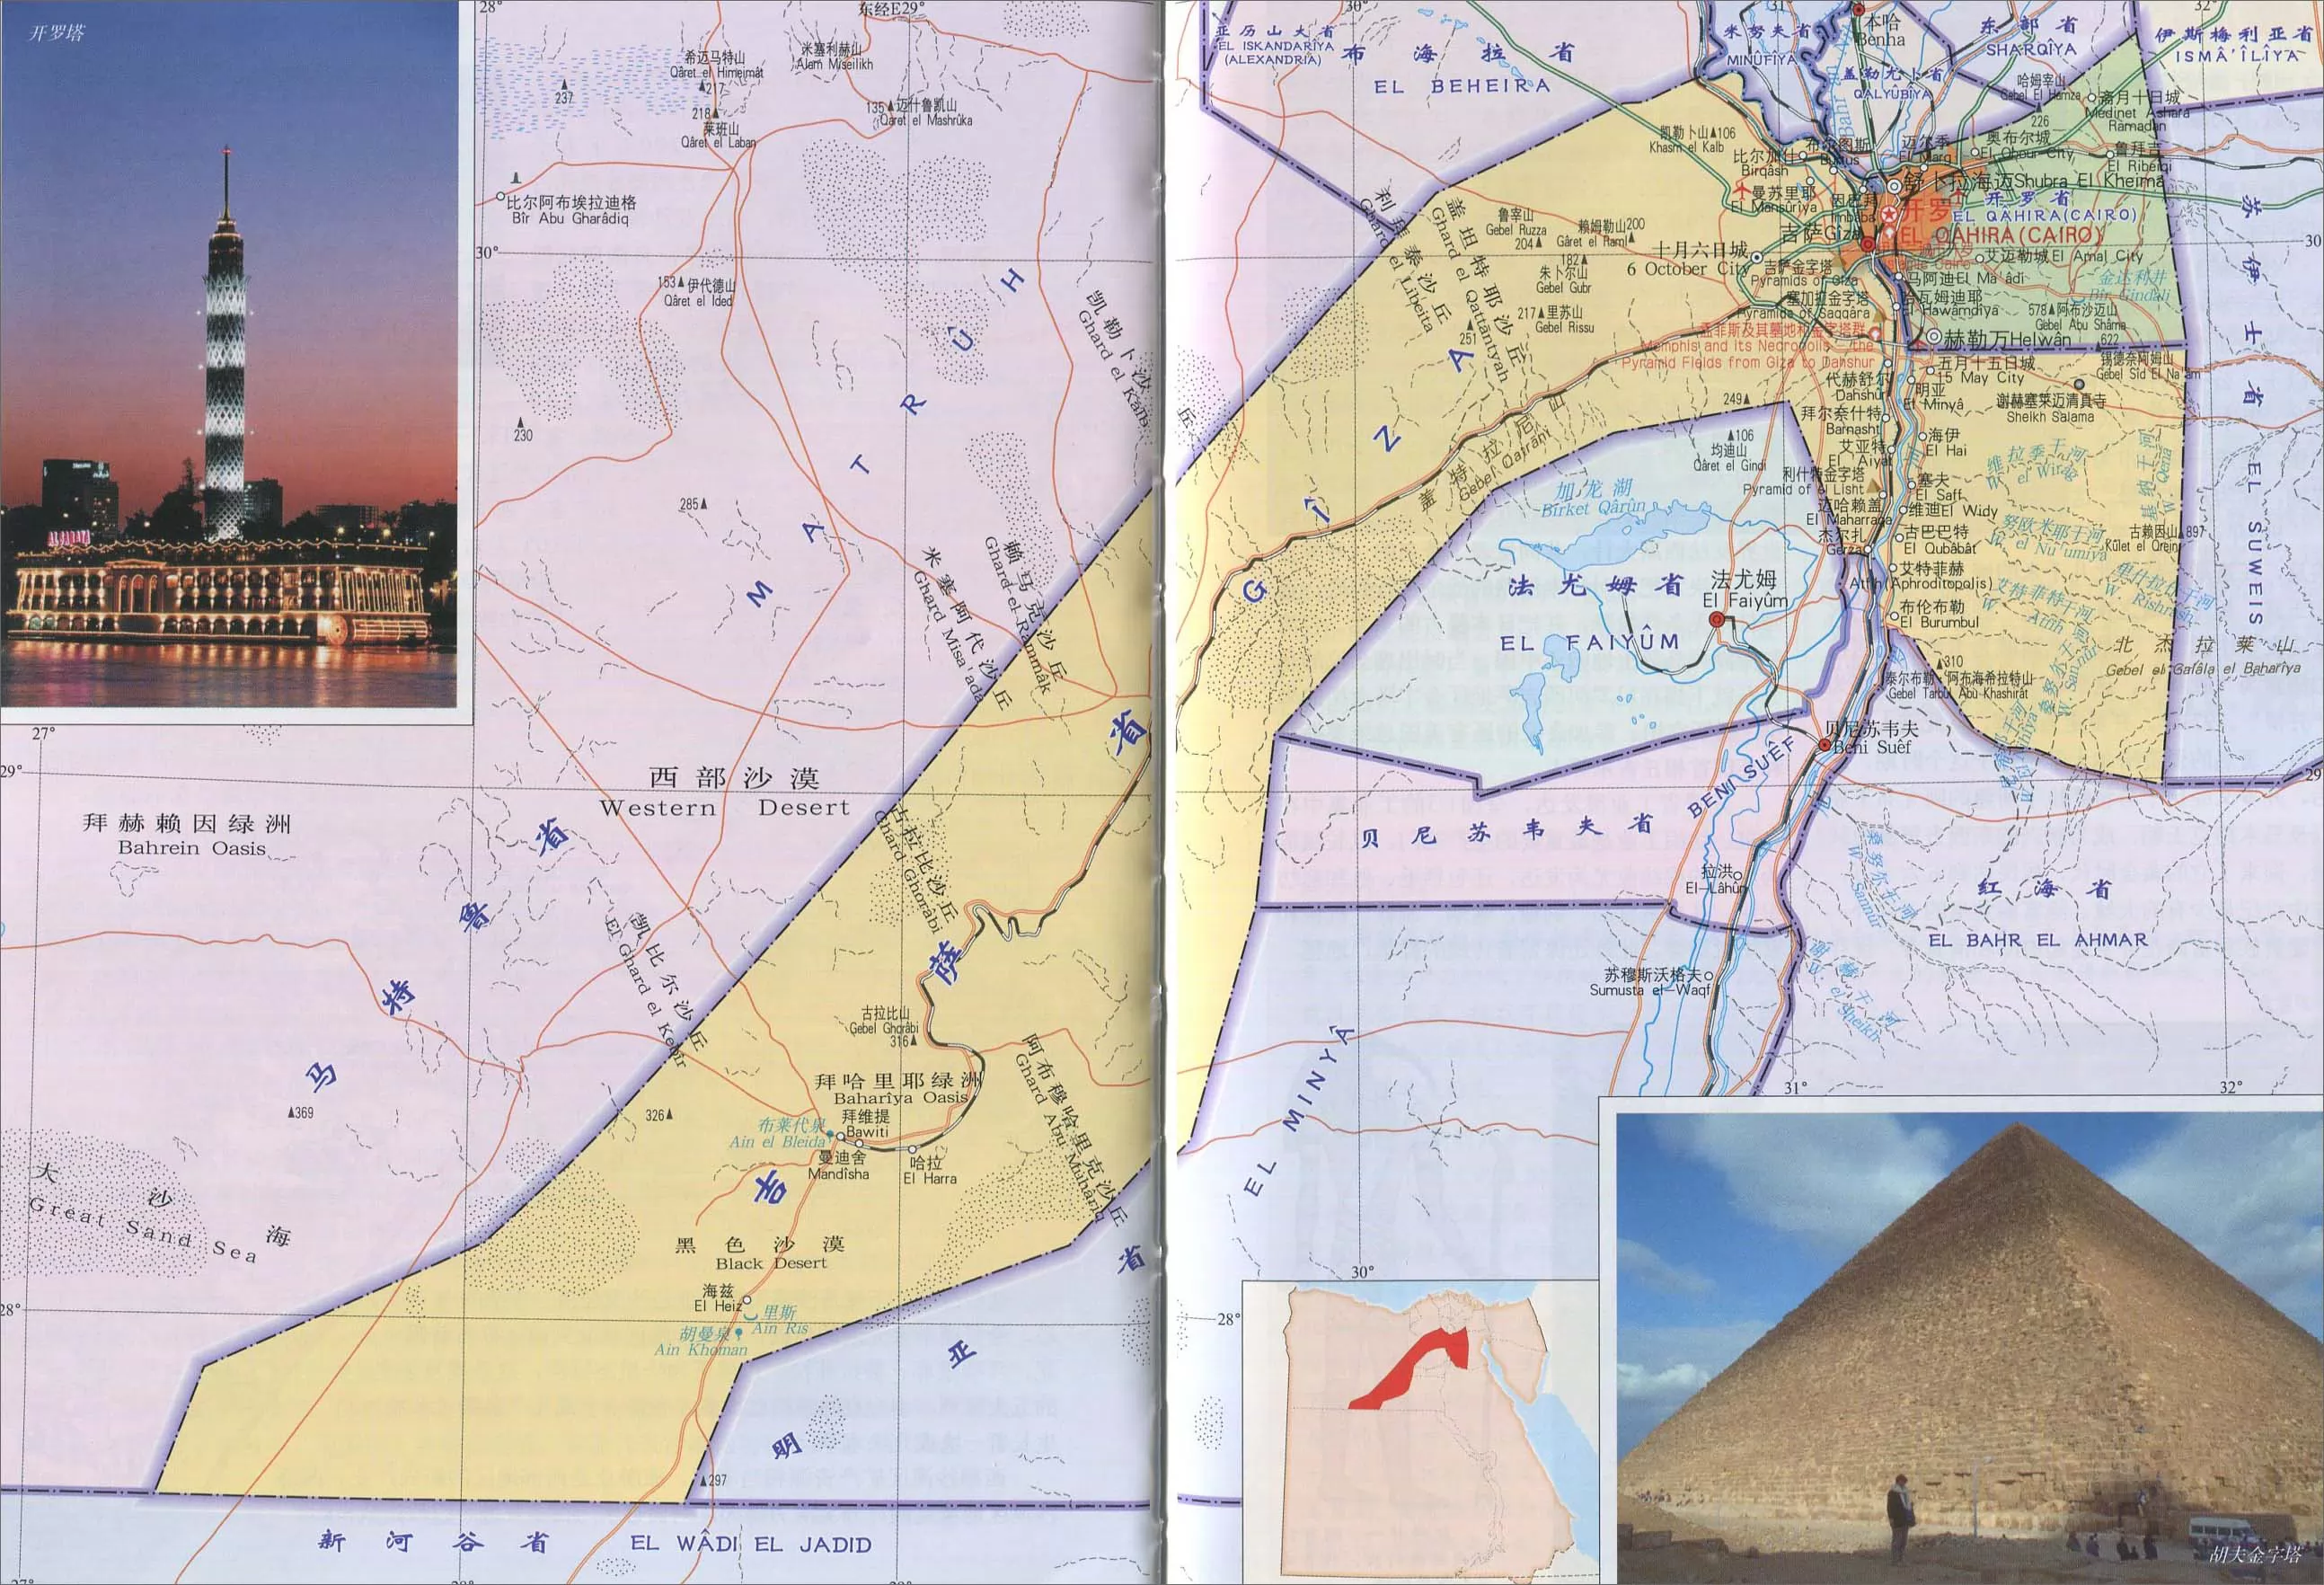 2019吉萨金字塔_旅游攻略_门票_地址_游记点评,开罗旅游景点推荐 - 去哪儿攻略社区